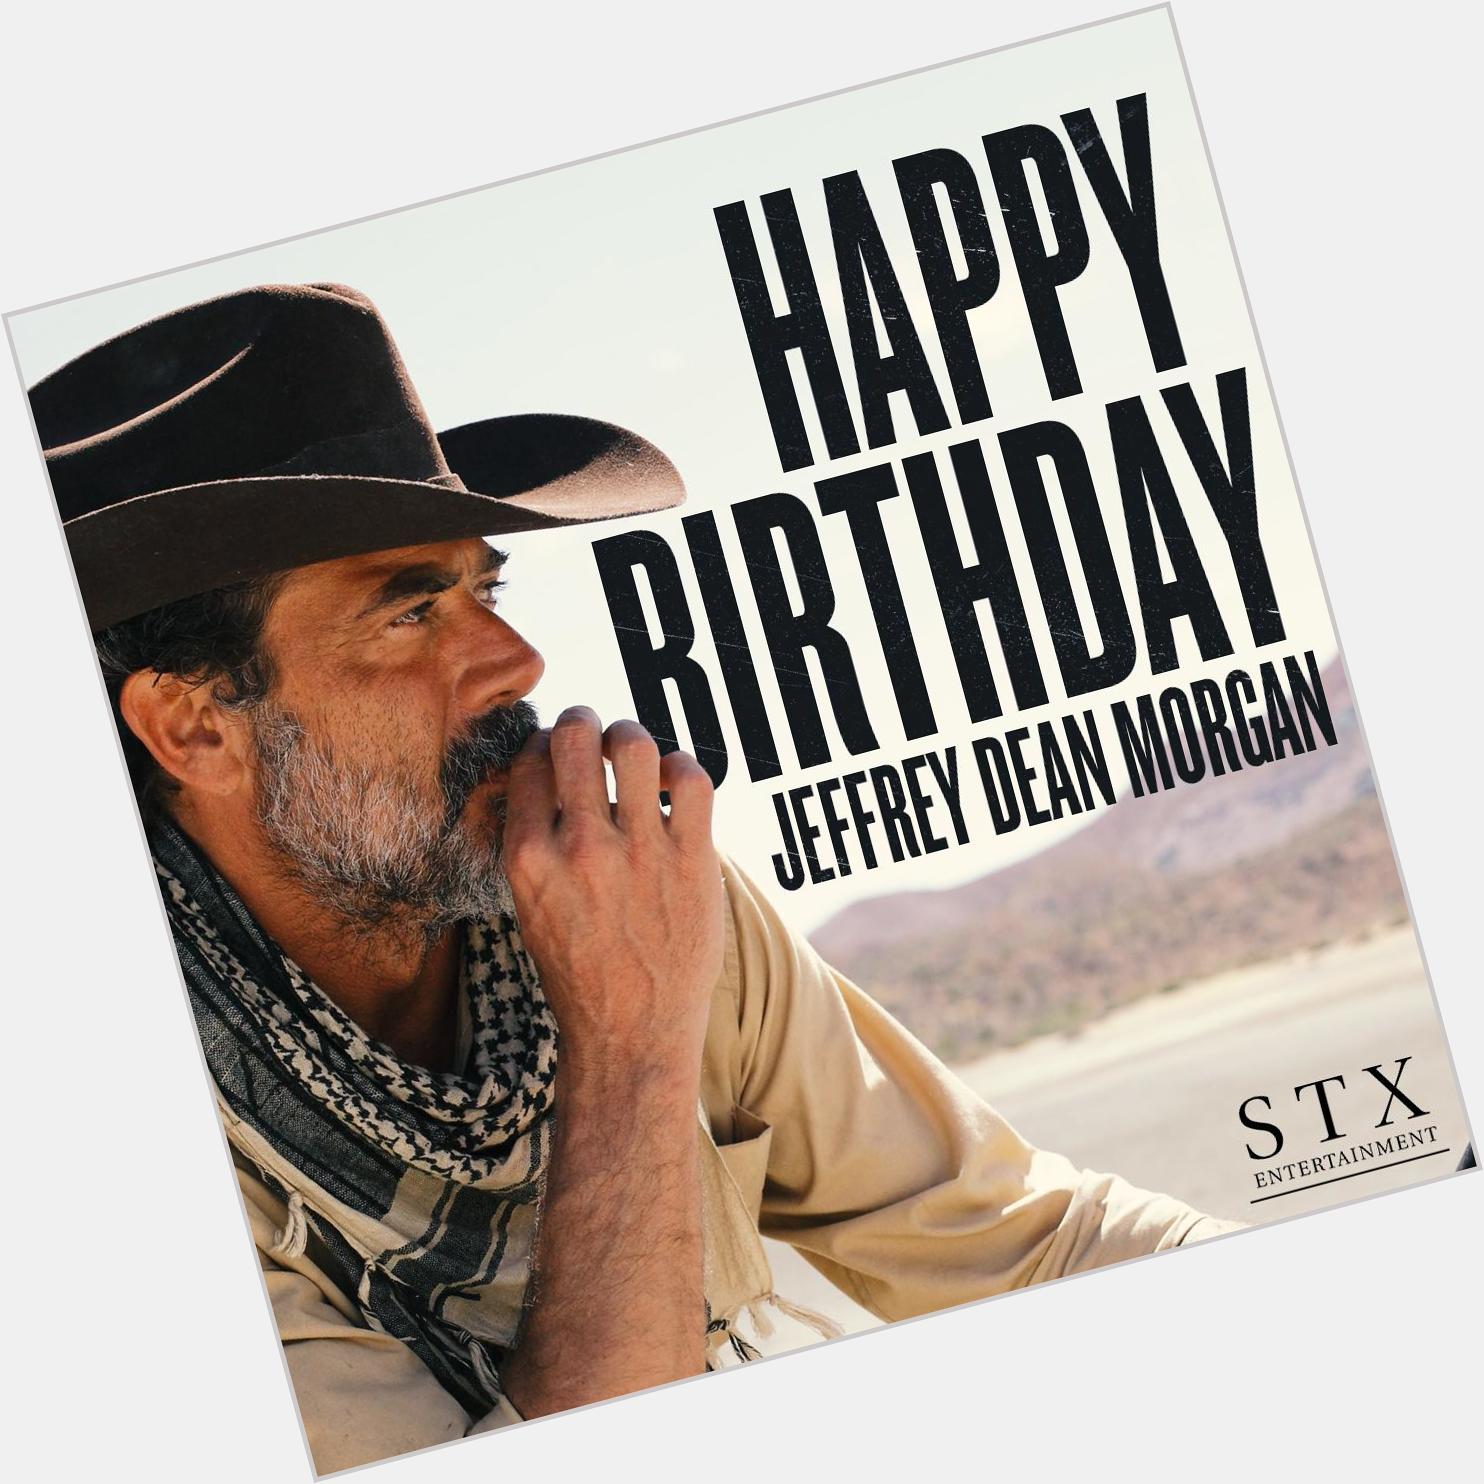 Happy birthday Jeffrey Dean Morgan! 